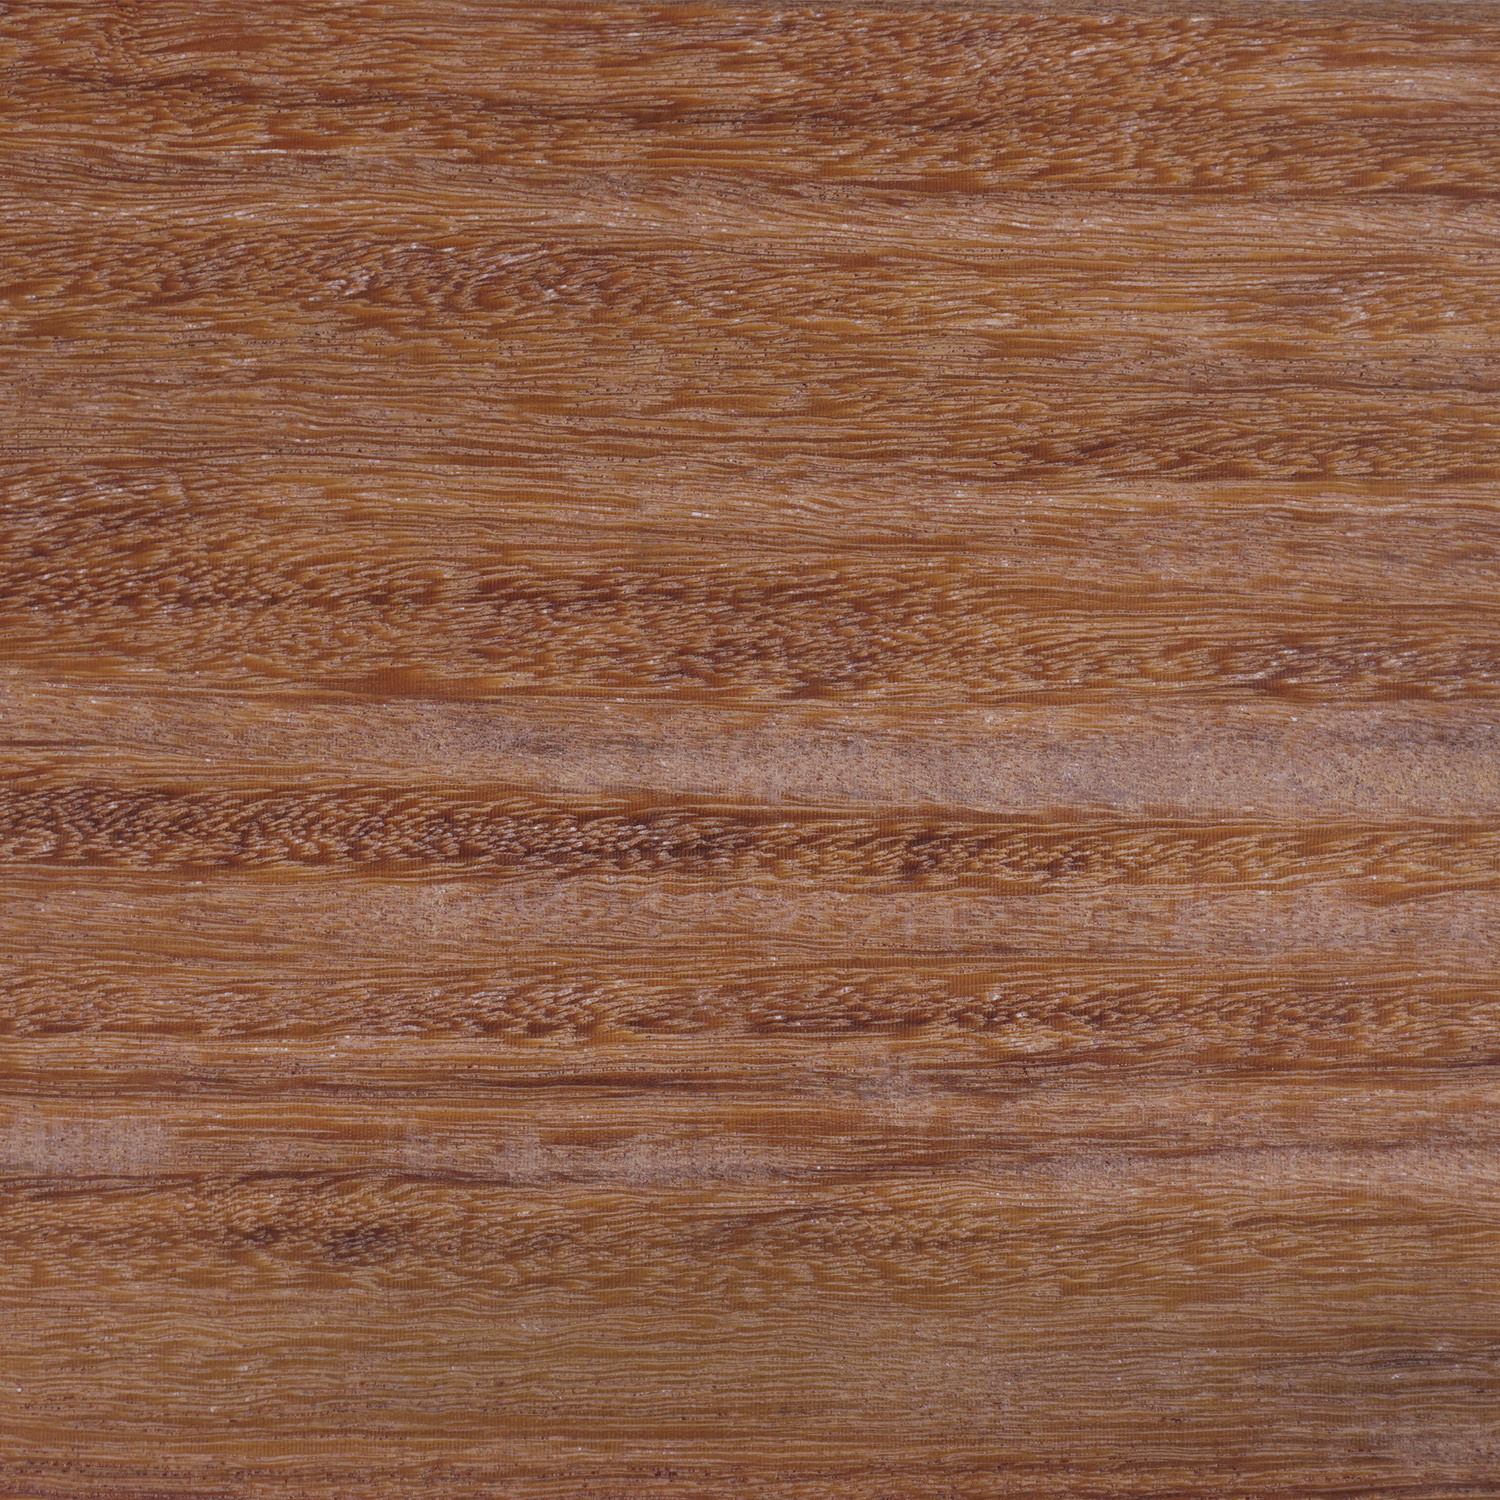  Cumaru rhombus deel - profiel - plank 21x143 mm geschaafd - kunstmatig gedroogd (kd 18-20%)- tropisch hardhout